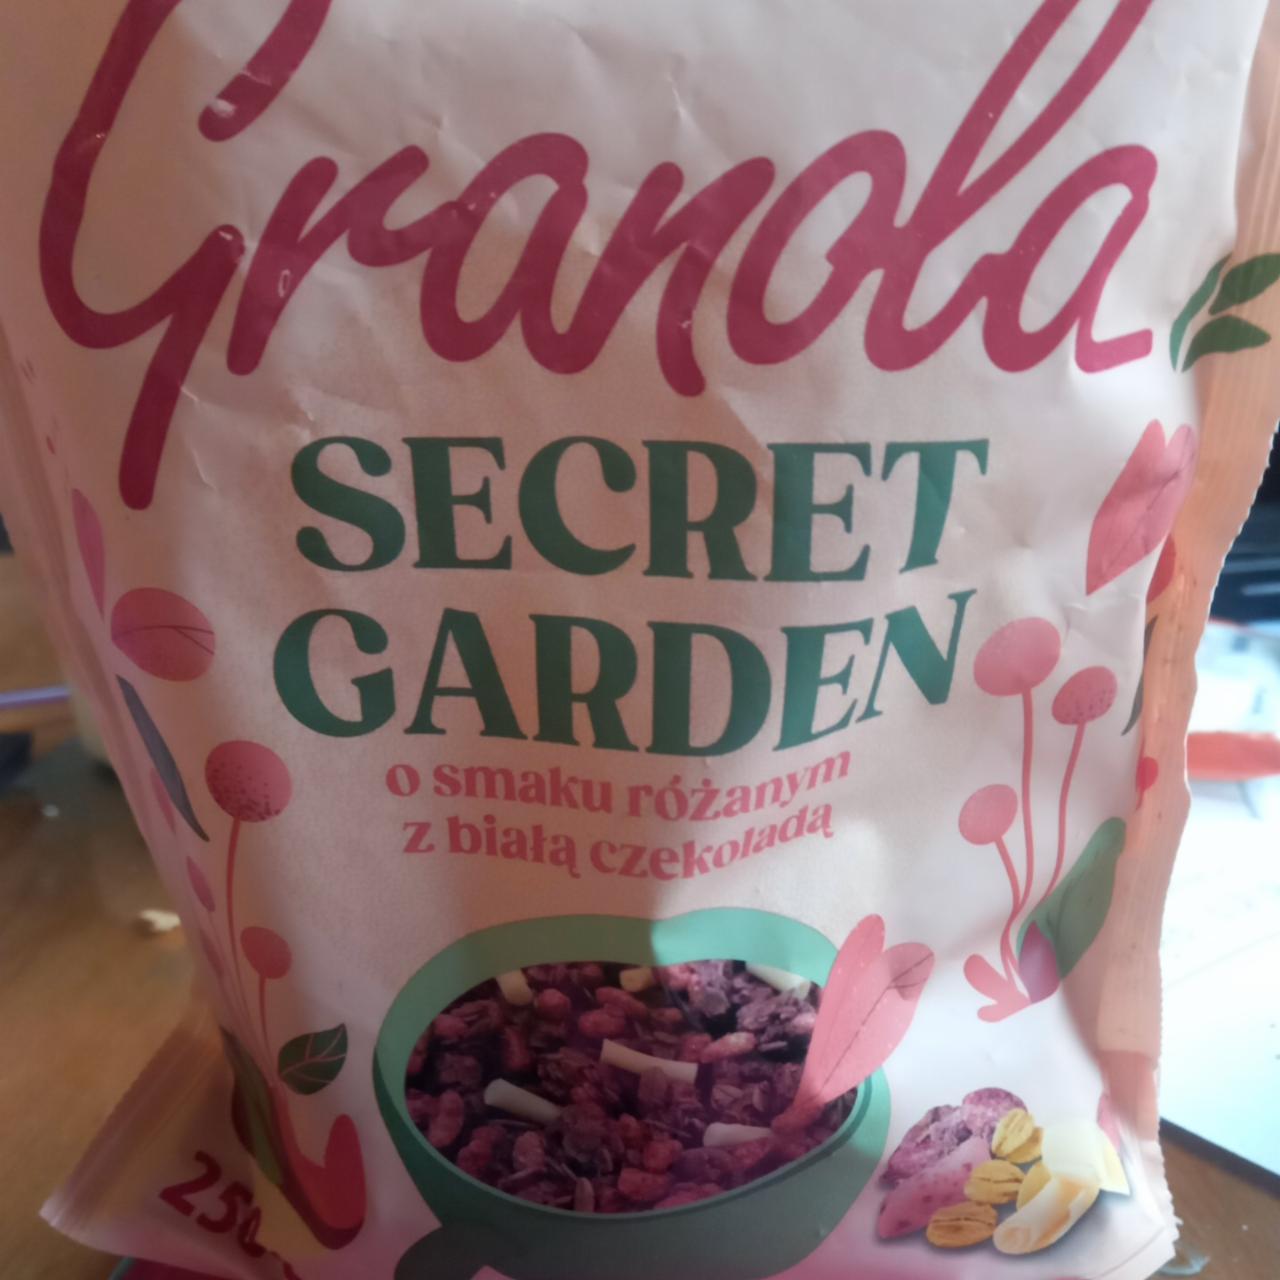 Zdjęcia - Granola o smaku różanym z białą czekoladą Secret Garden